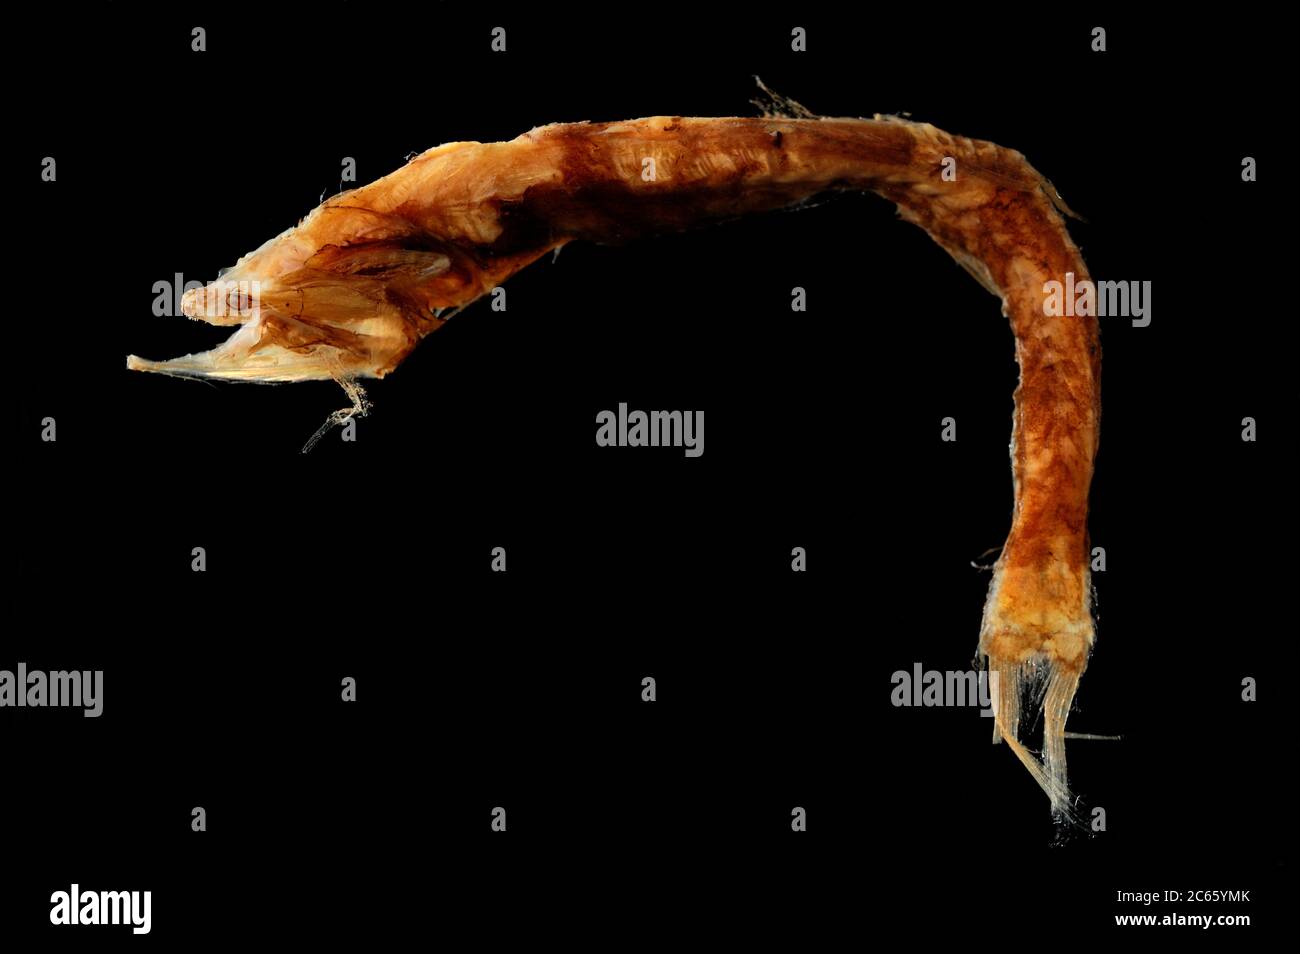 Voilé à l'anglemouth (Cyclothone microdon) la photo a été prise en coopération avec l'Université du Musée zoologique de Hambourg Banque D'Images